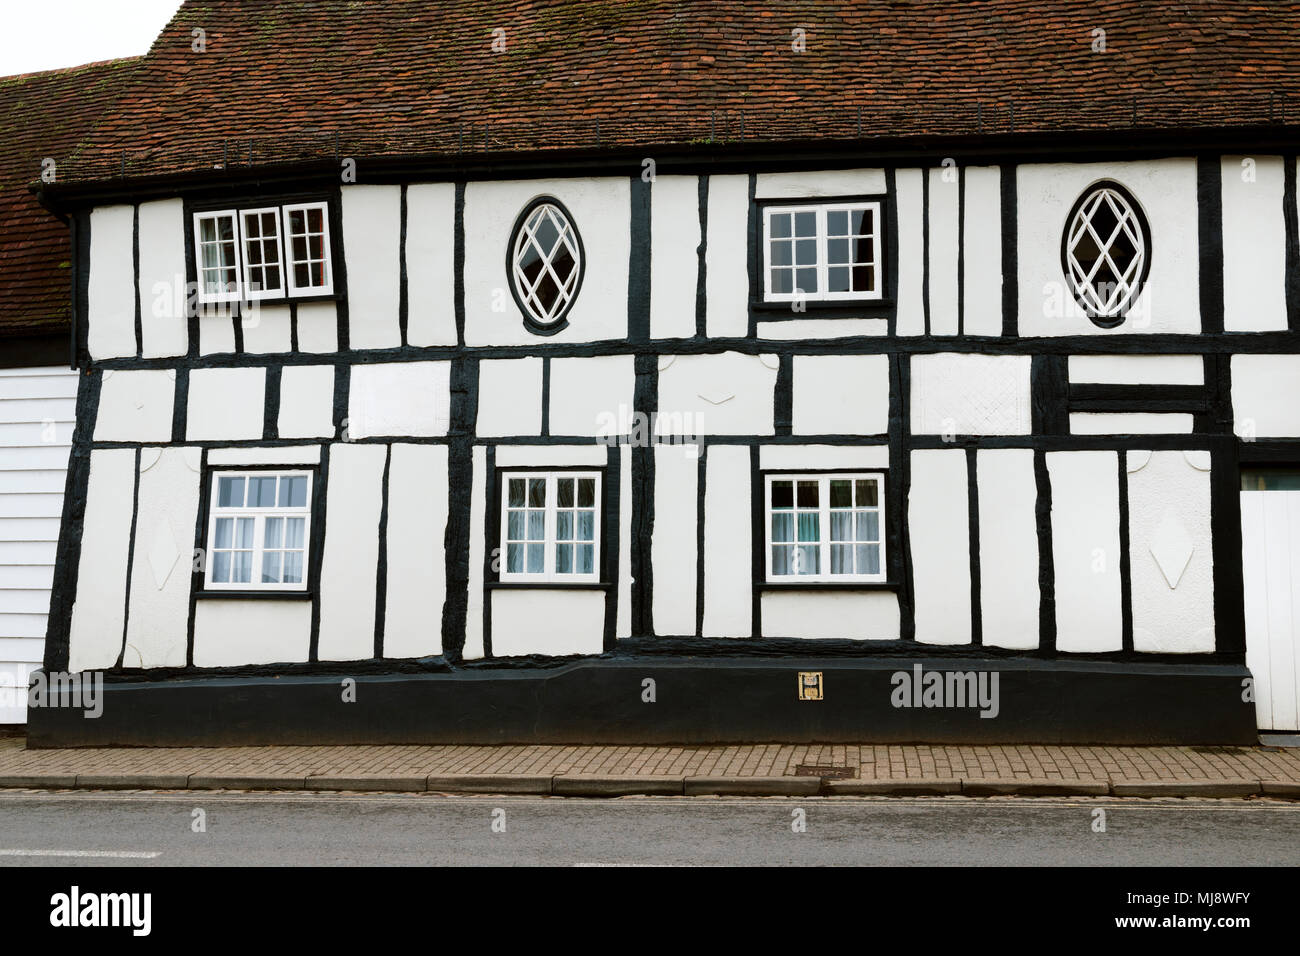 Schwarze und weiße Fachwerkhaus, St Michael's Street, St Alban's, Hertfordshire, England, UK. Fachwerkhaus aus dem 17. Jahrhundert mit Änderungen. Stockfoto